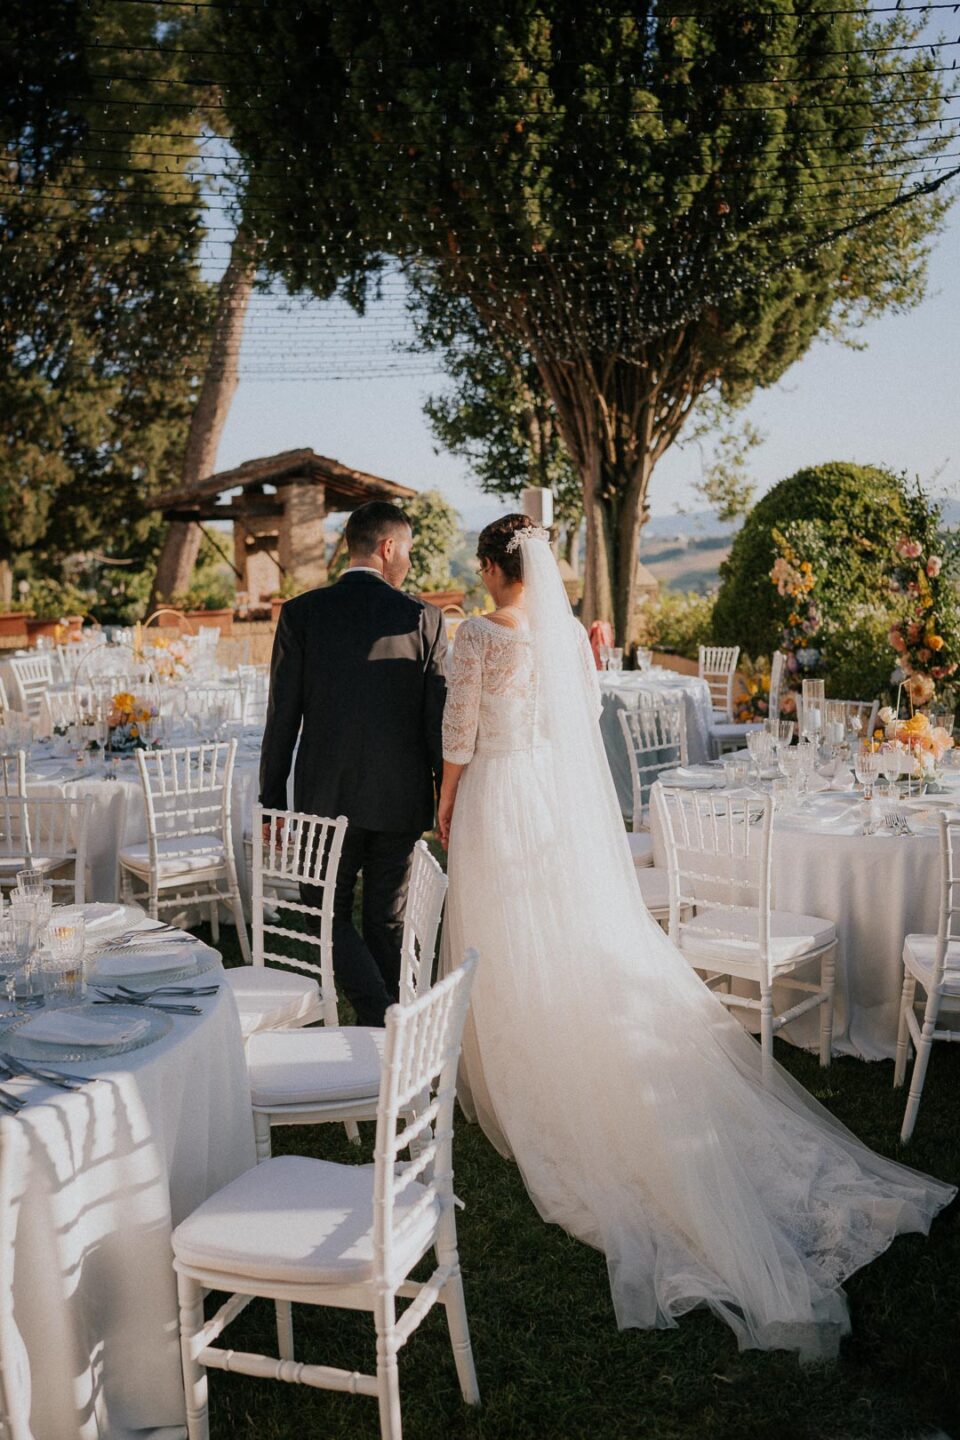 Alessia e Luca- Matteo Fagiolino fotografo matrimonio Rimini Conventino di Gradara